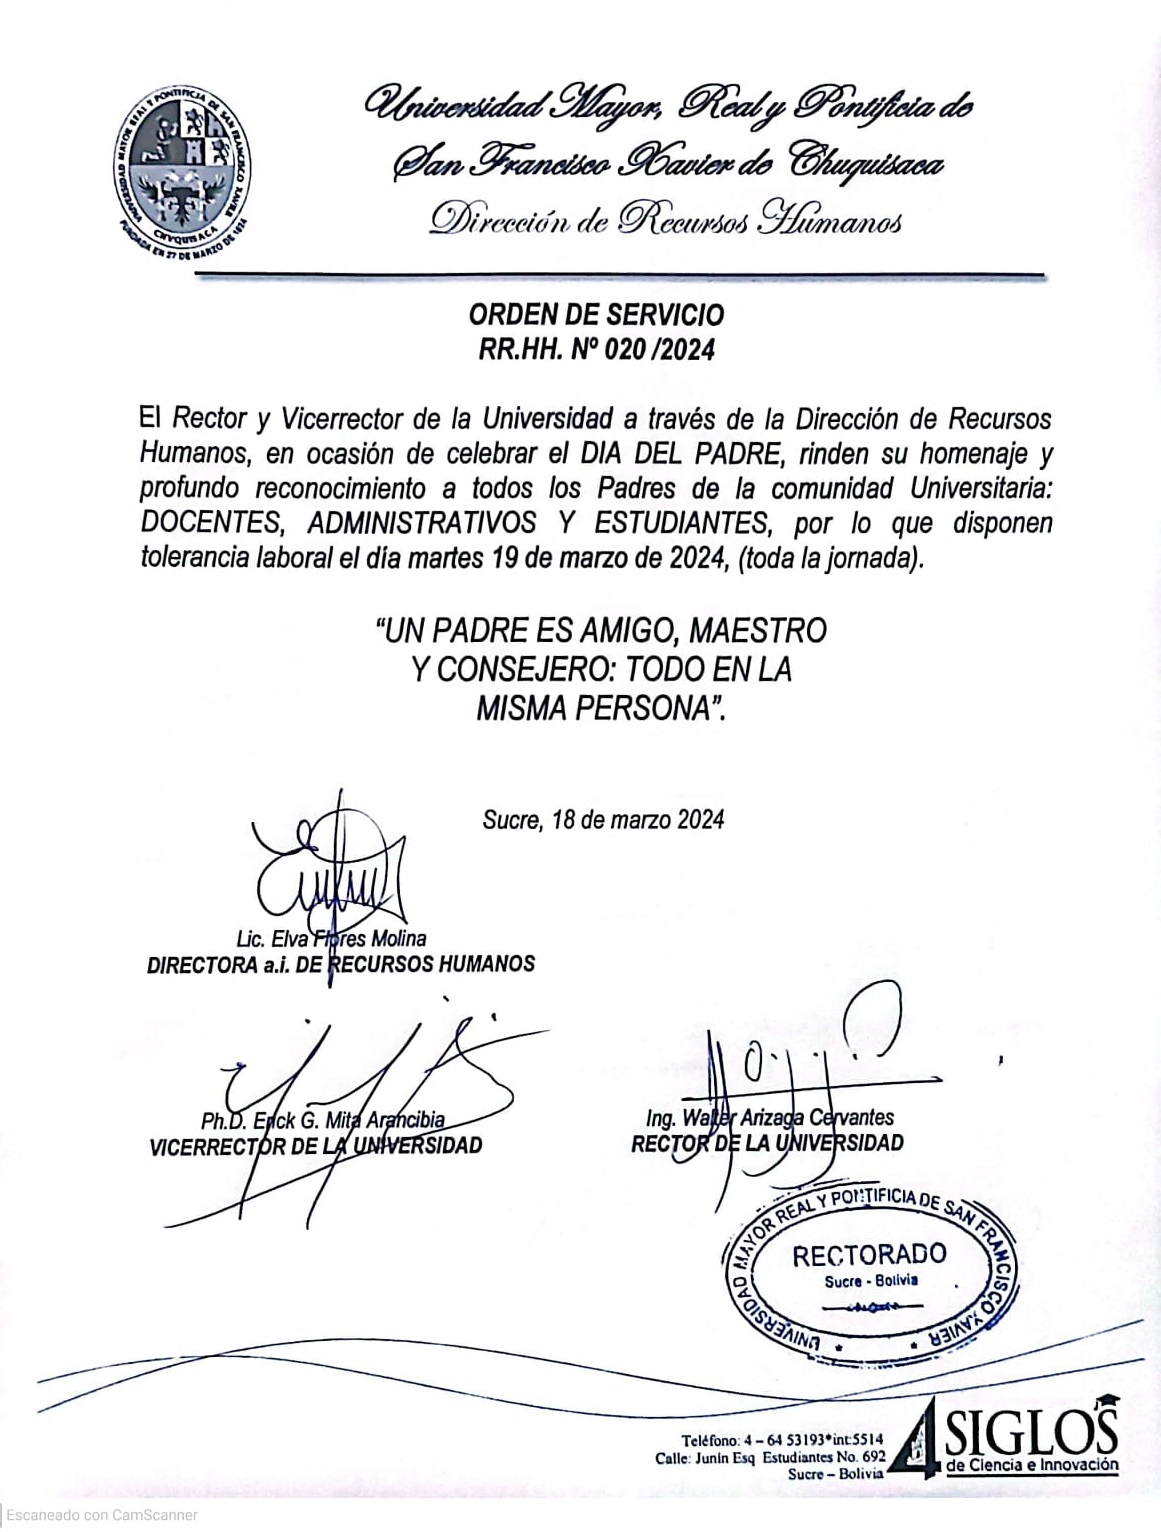 ORDEN DE SERVICIO RR.HH. Nº 020/2024, TOLERANCIA DÍA DEL PADRE.